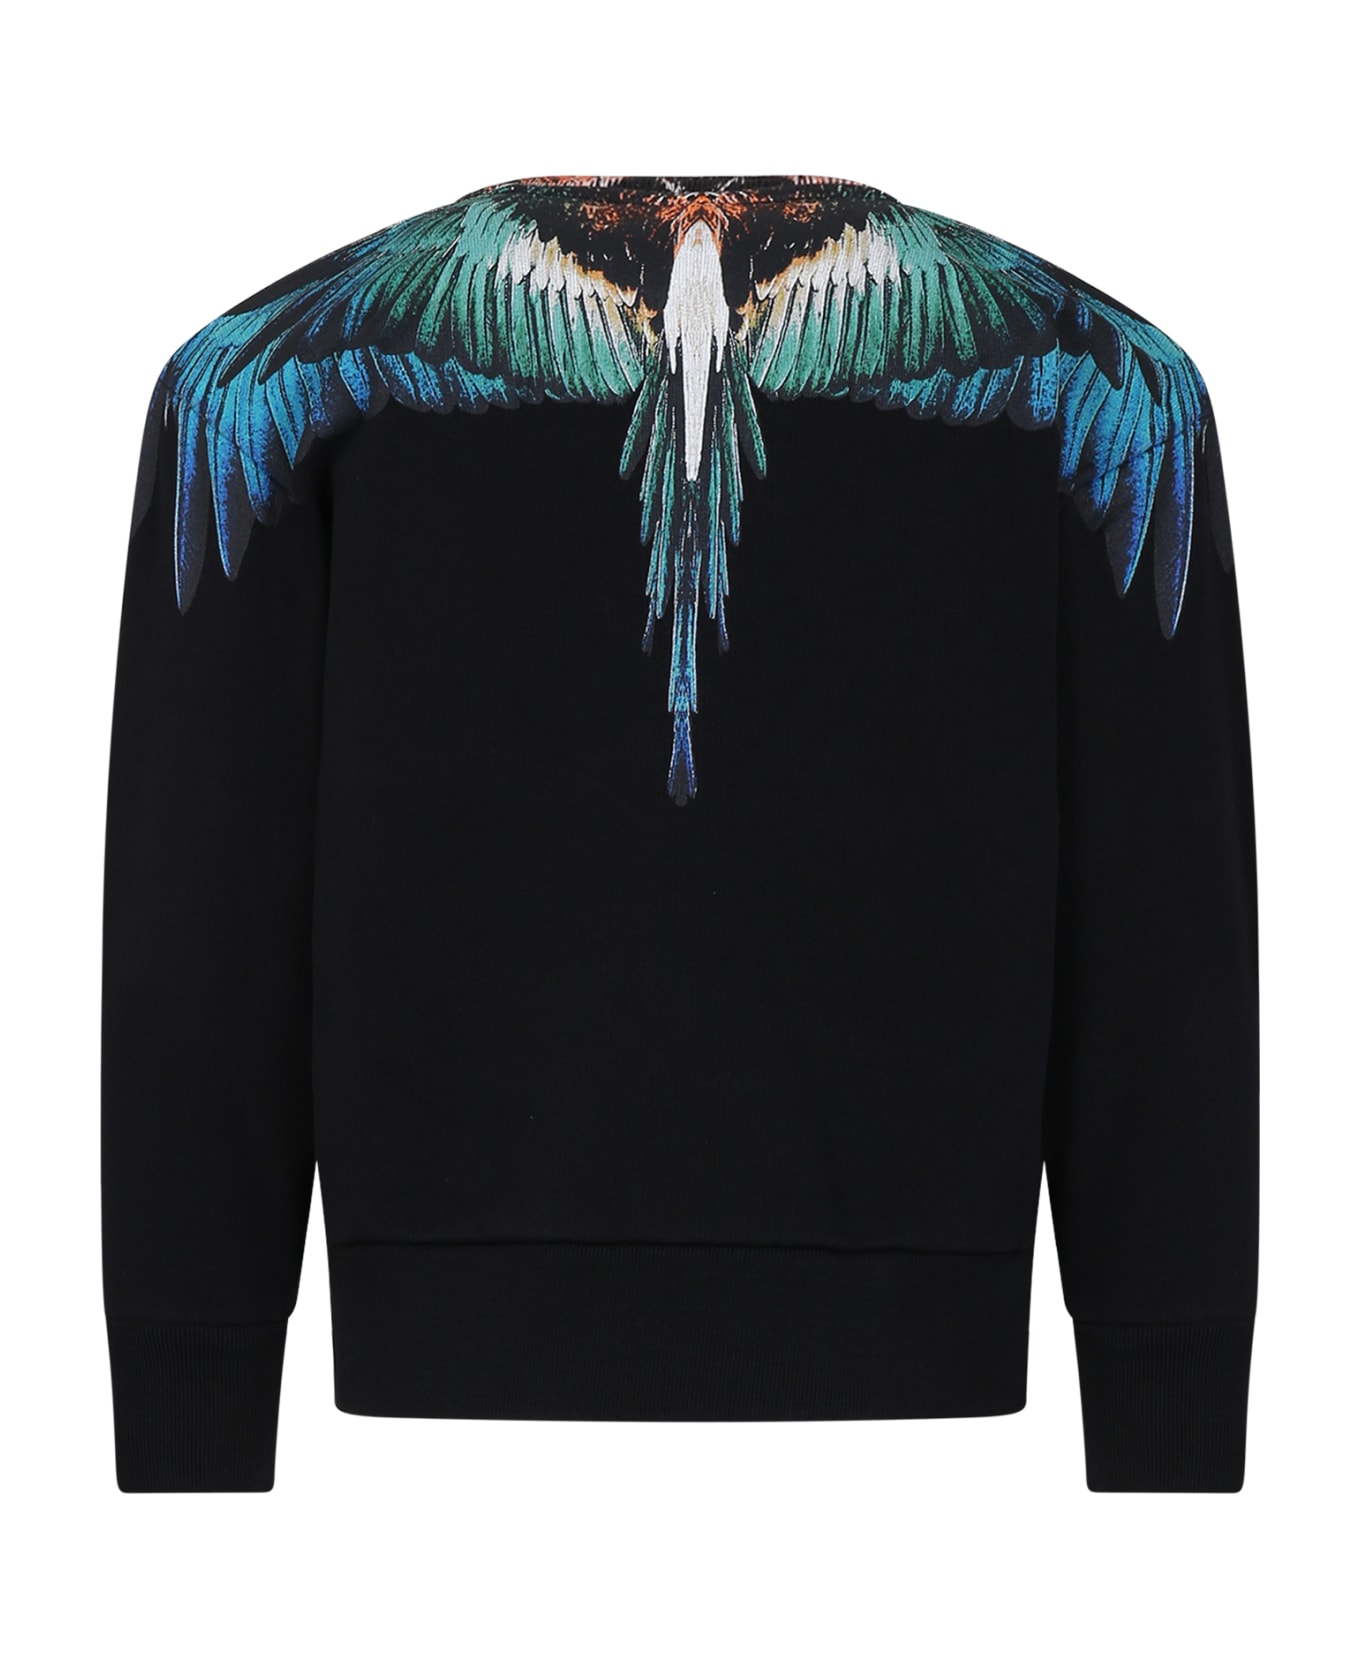 Marcelo Burlon Black Sweatshirt For Boy With Wings - Black Bl